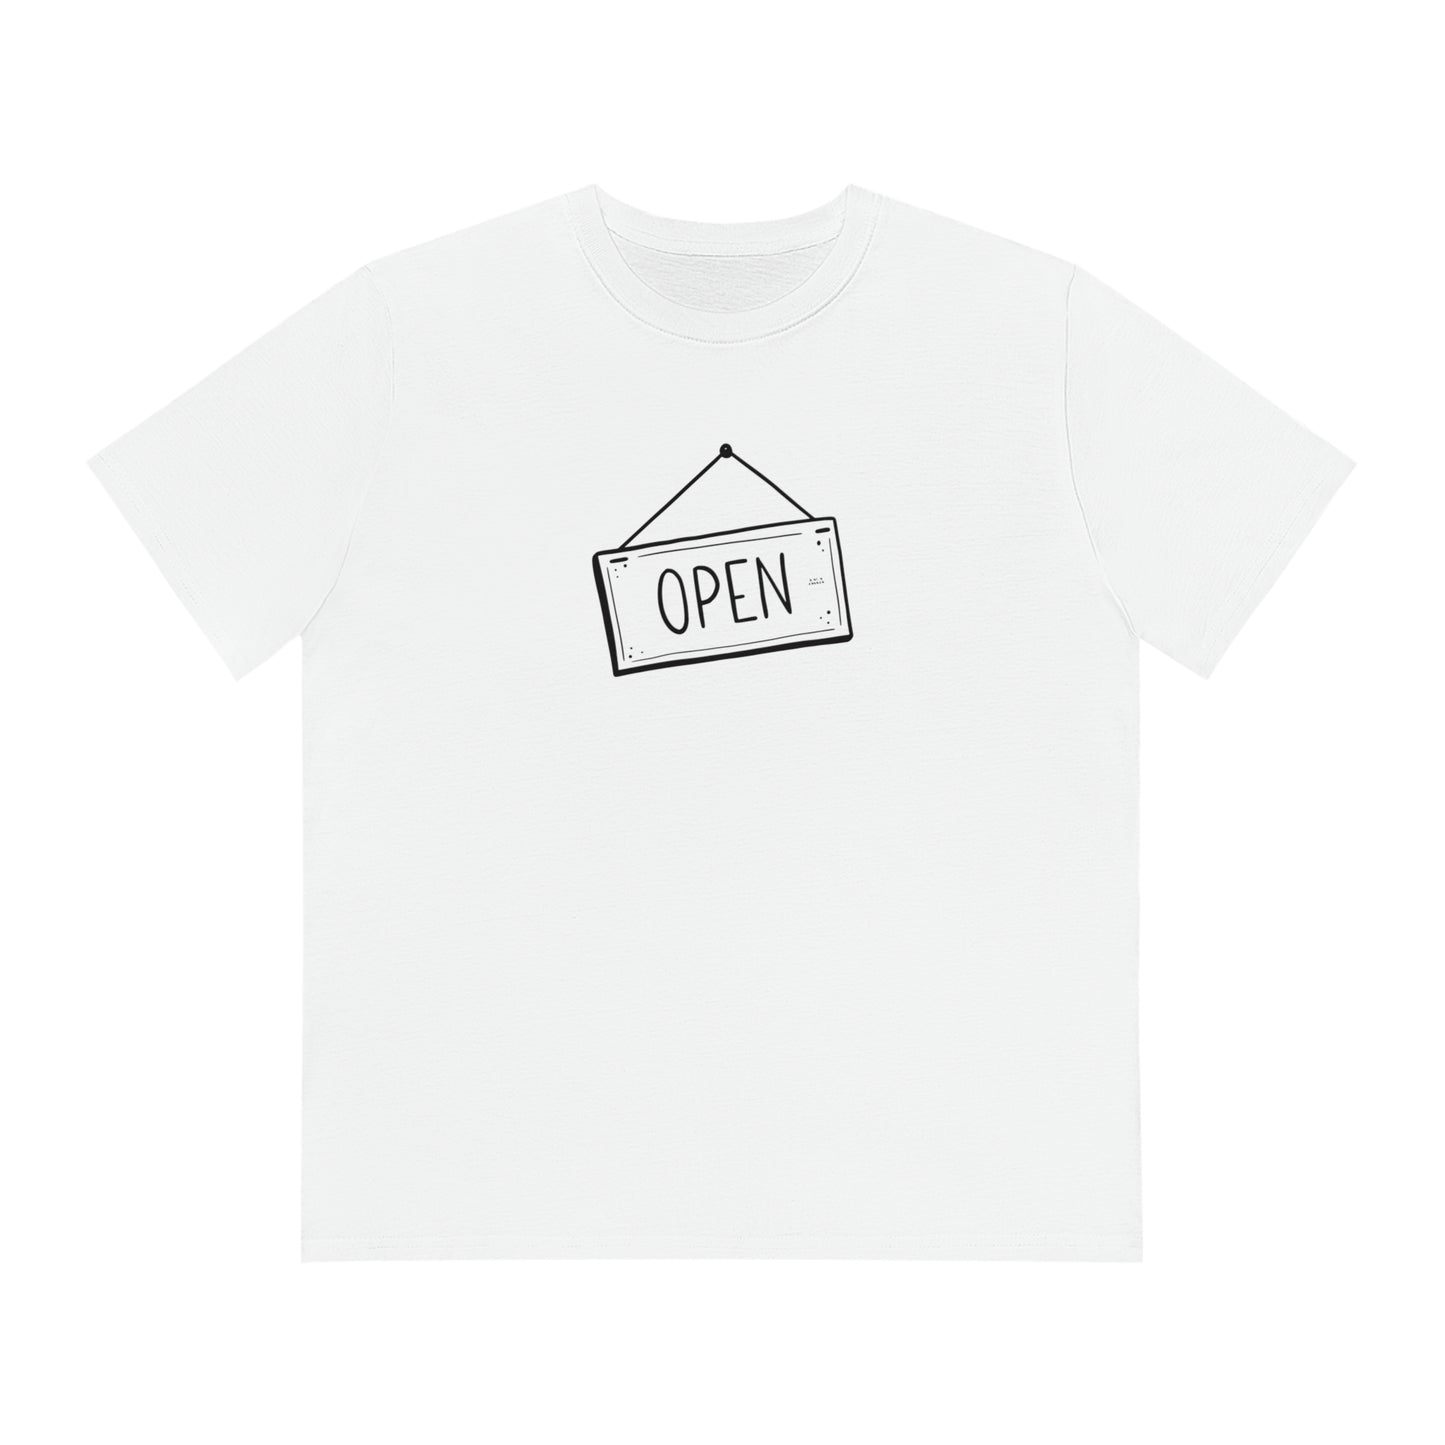 T-shirt - Open